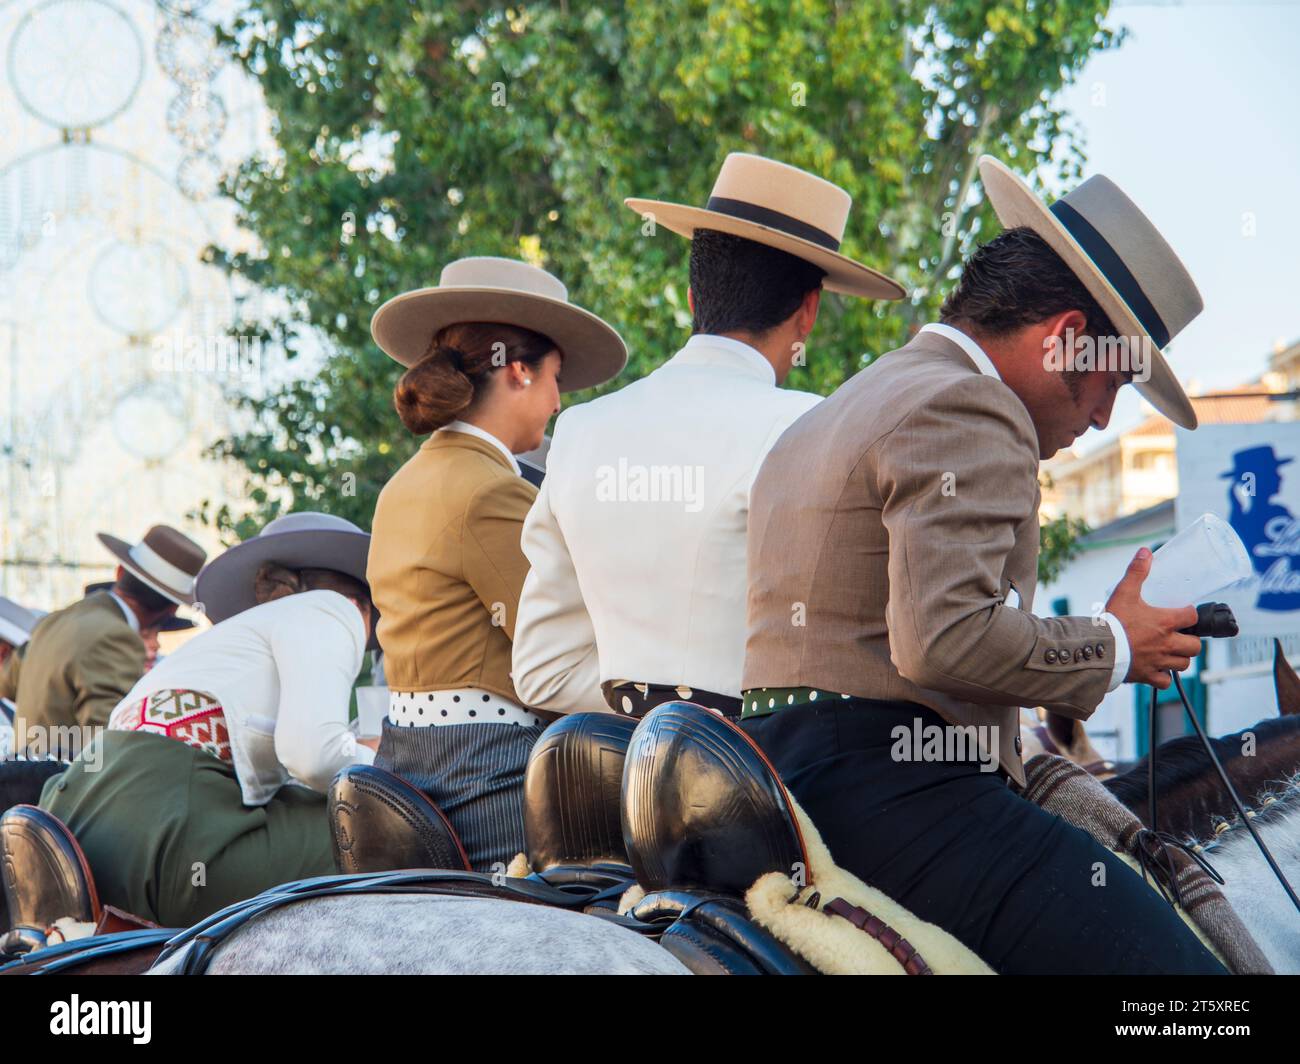 Gruppen von Reitern in typisch andalusischer Tracht, die während der Feria durch das Messegelände von Fuengirola reiten Stockfoto